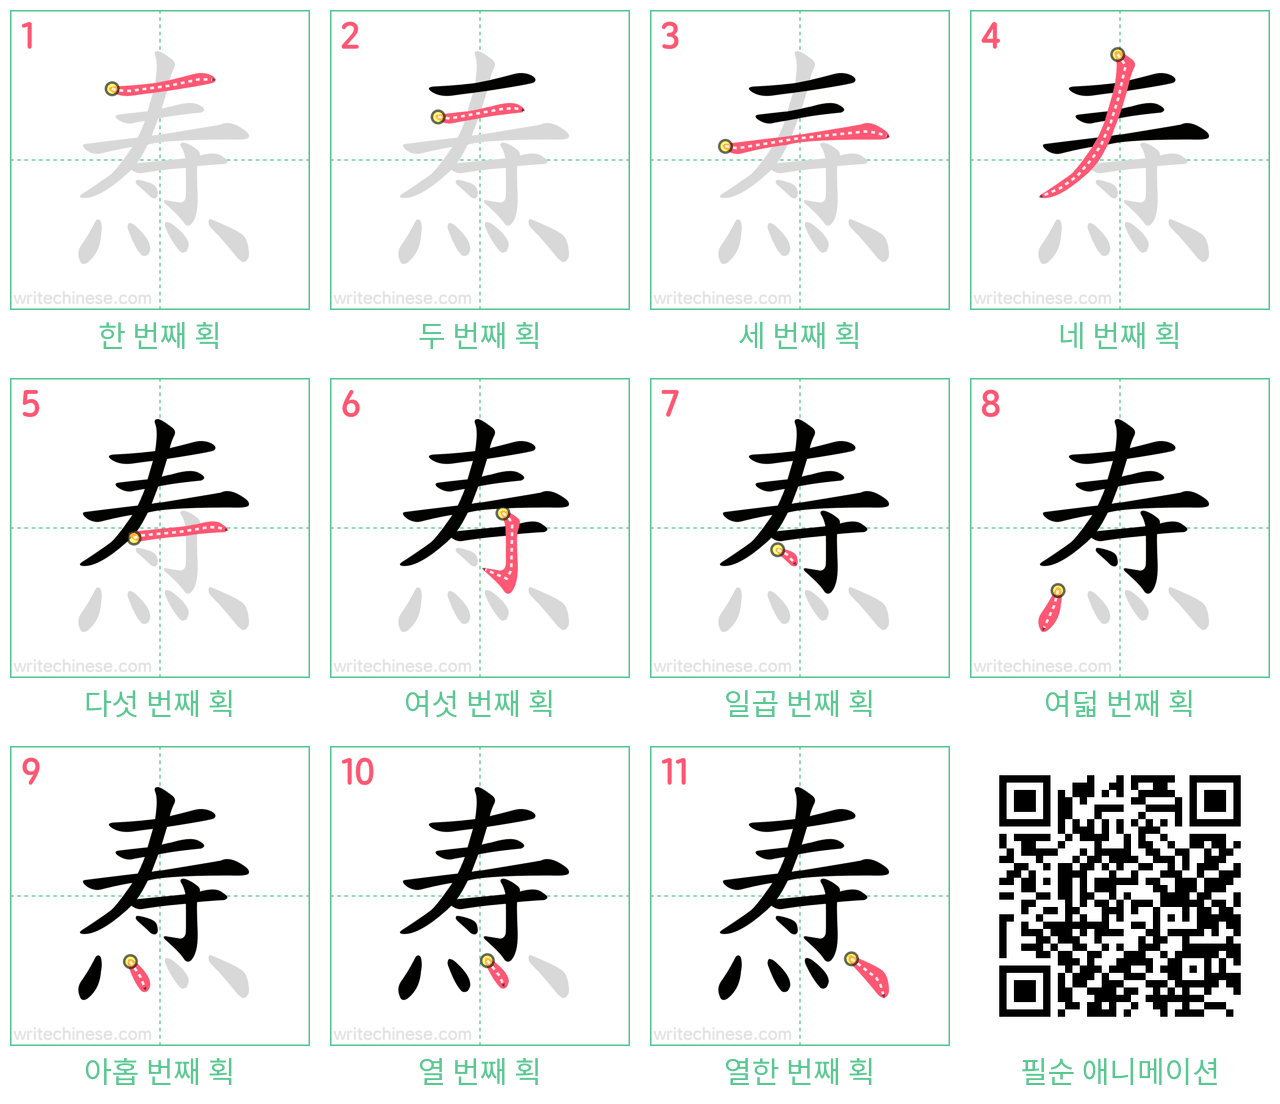 焘 step-by-step stroke order diagrams